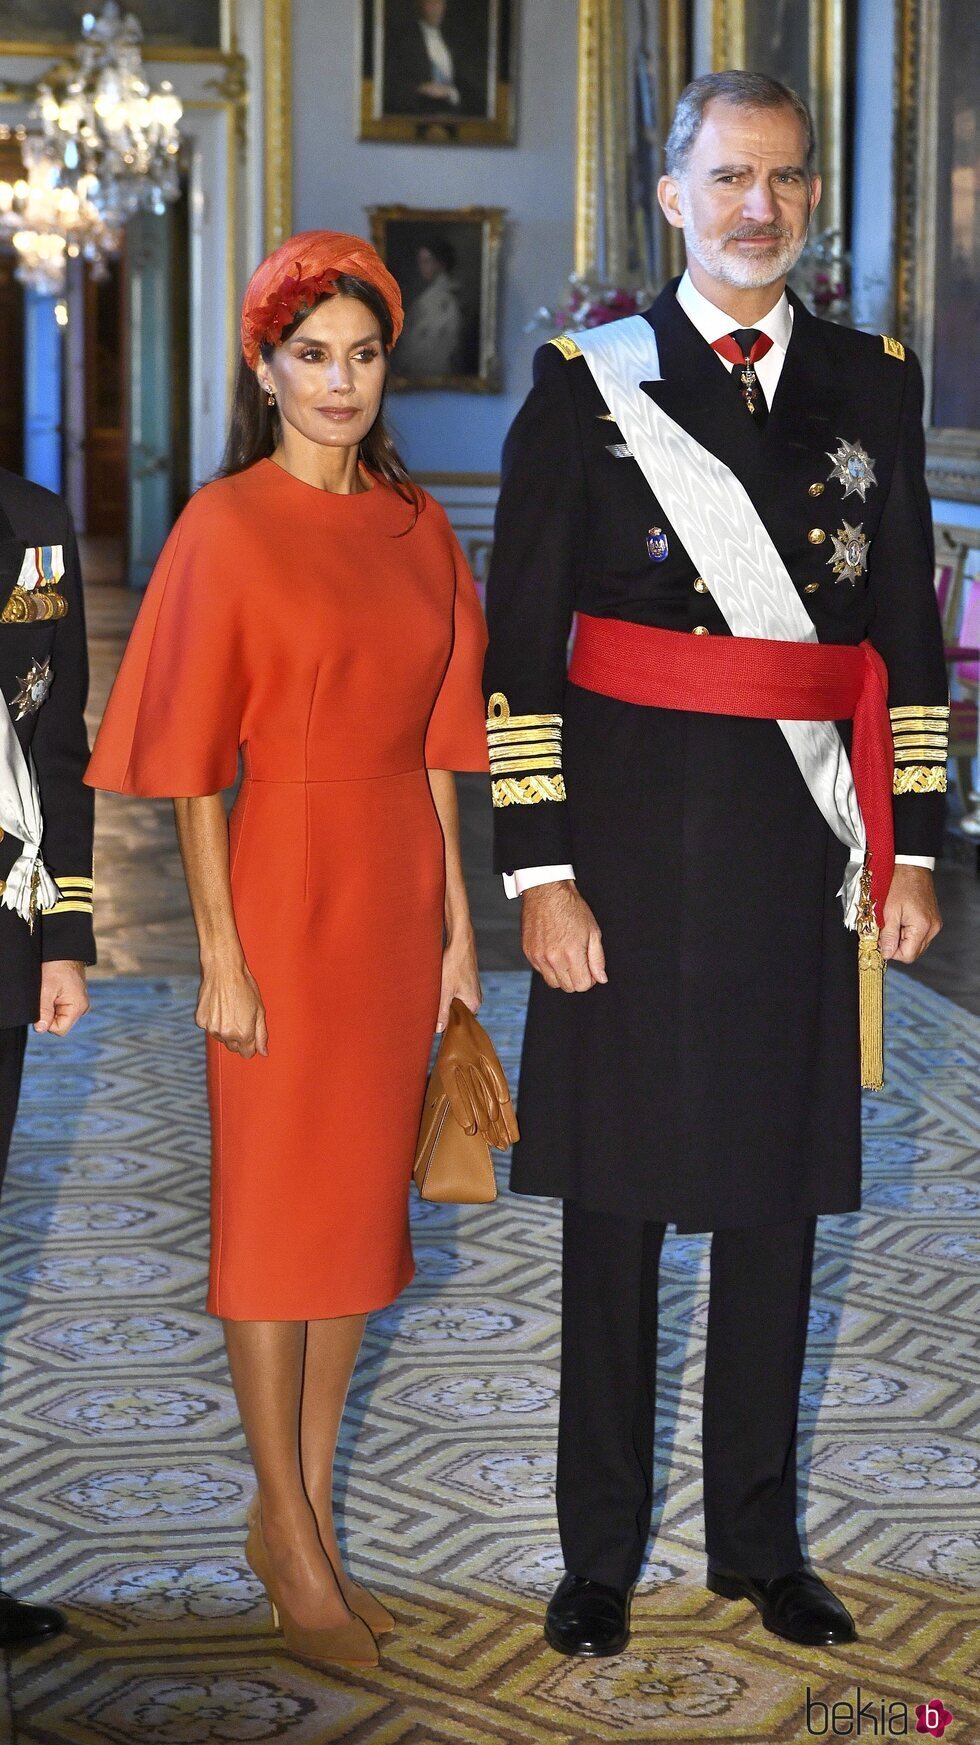 Los Reyes Felipe y Letizia en el Palacio Real de Estocolmo en la Visita de Estado de los Reyes de España a Suecia